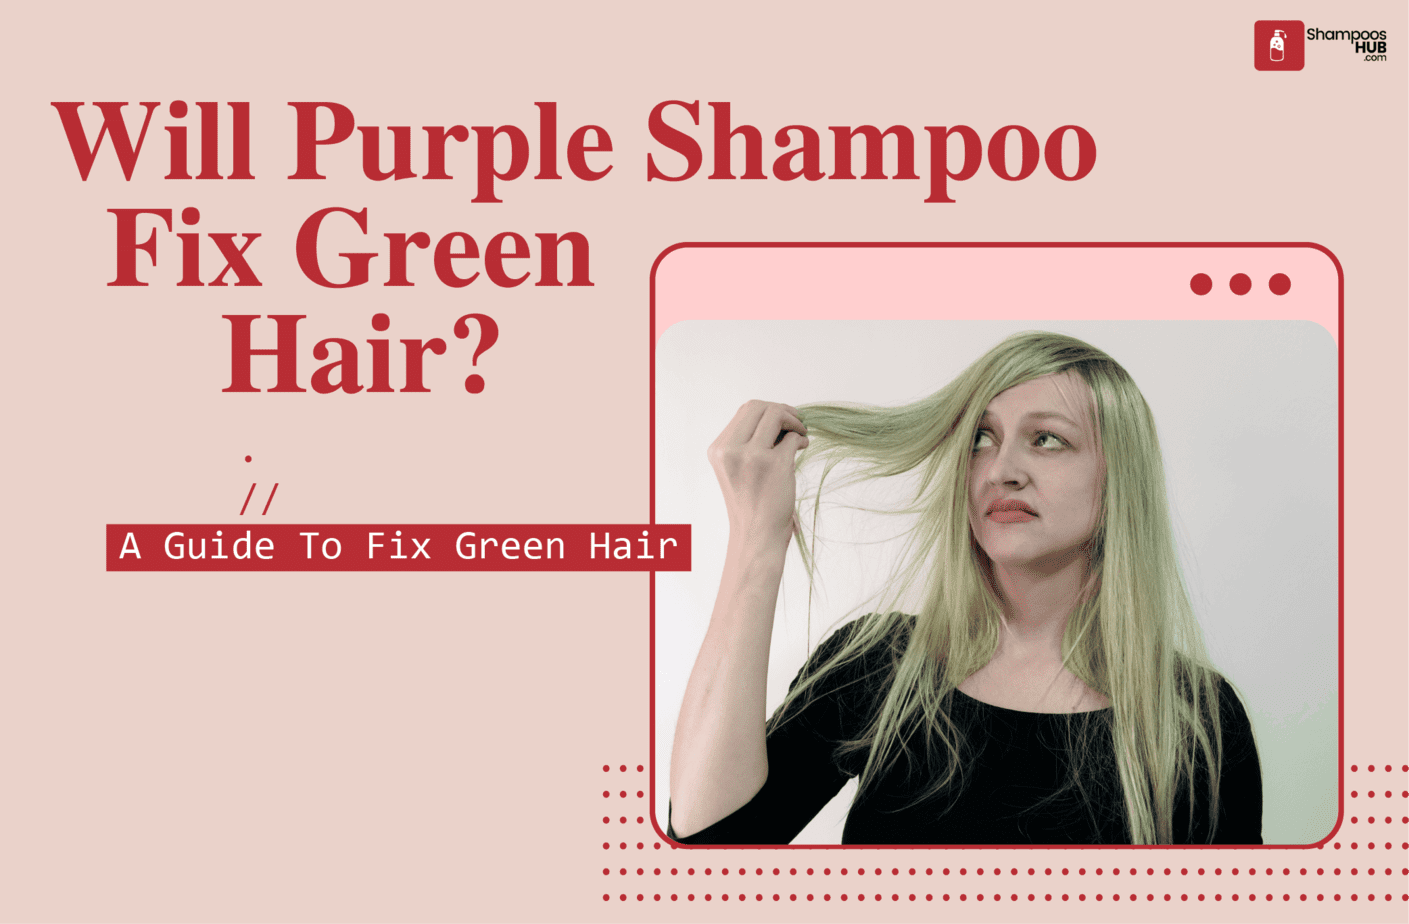 Will Purple Shampoo Fix Green Hair?